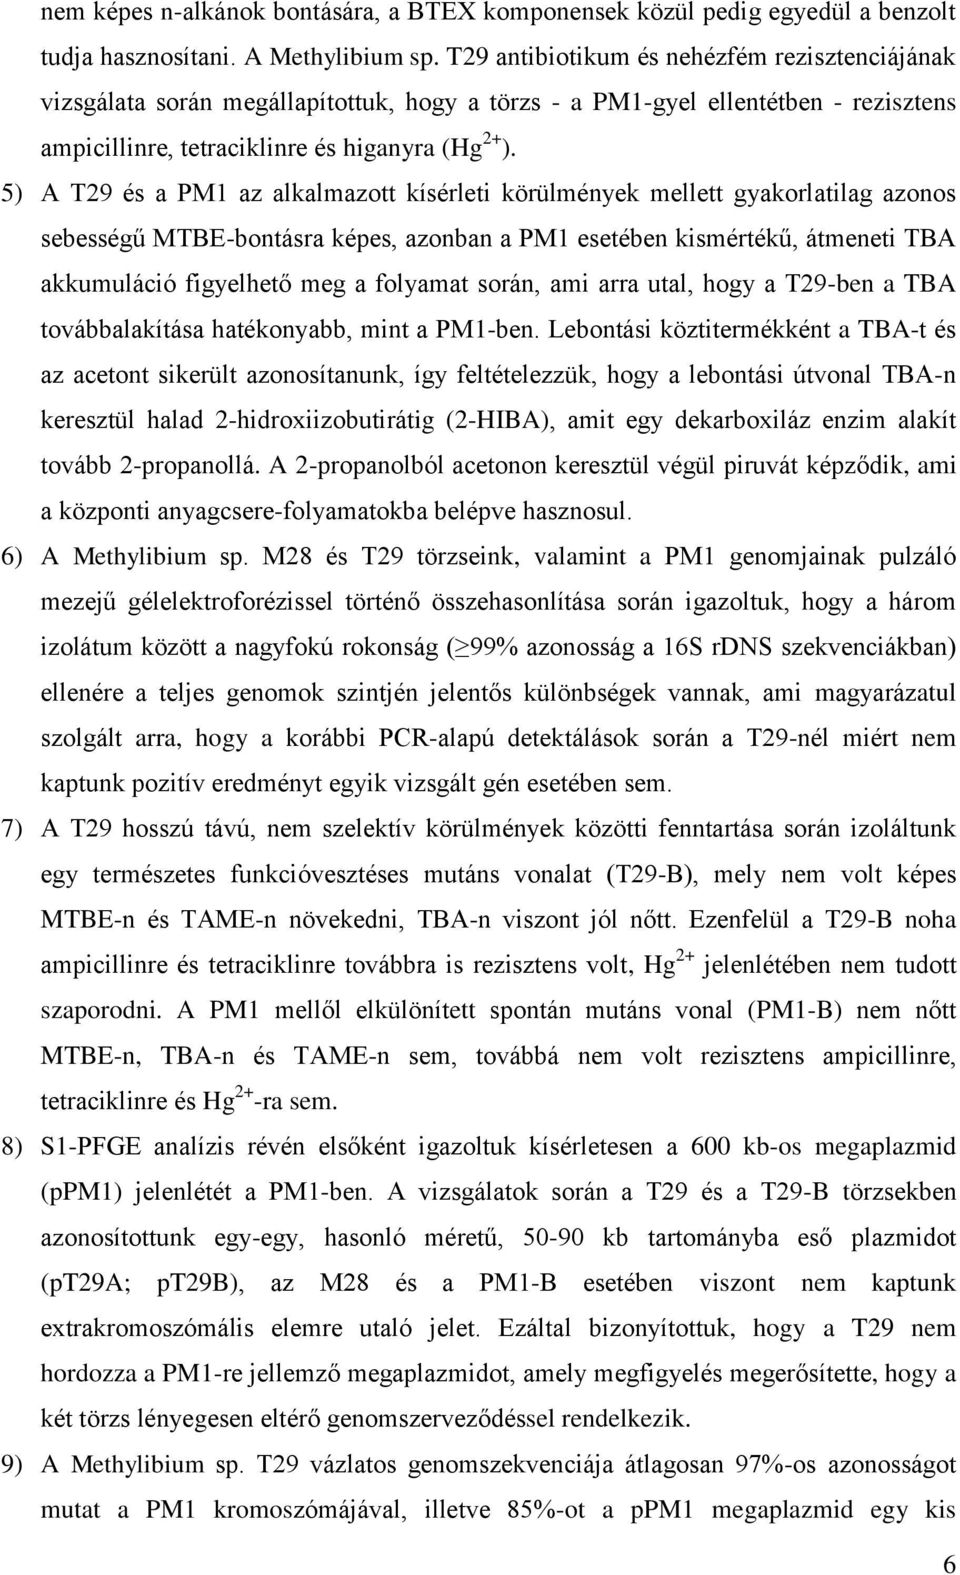 5) A T29 és a PM1 az alkalmazott kísérleti körülmények mellett gyakorlatilag azonos sebességű MTBE-bontásra képes, azonban a PM1 esetében kismértékű, átmeneti TBA akkumuláció figyelhető meg a